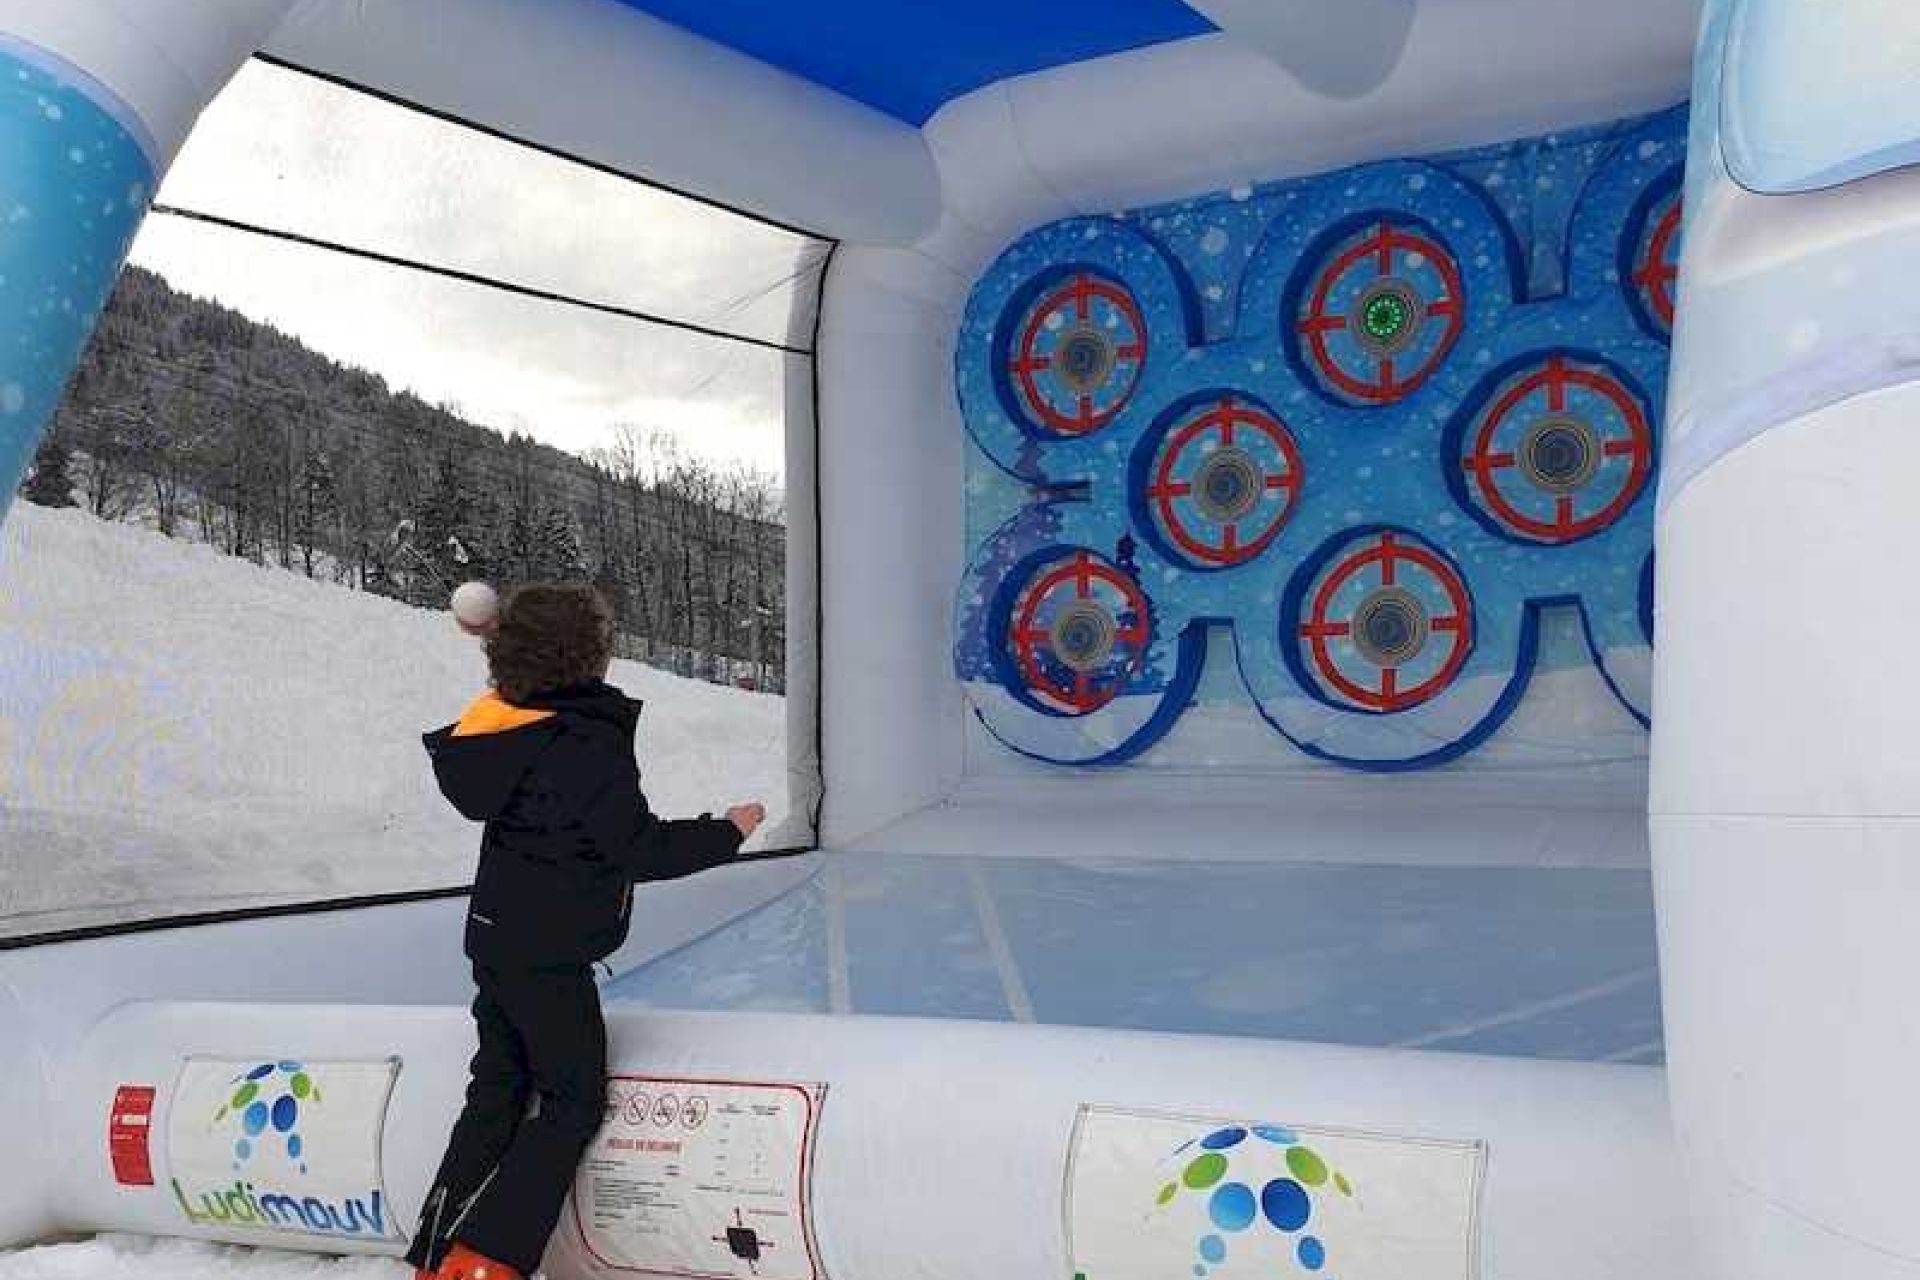 Enfant lançant une boule de neige sur une cible de la cage gonflable, installée en extérieur sur la neige.